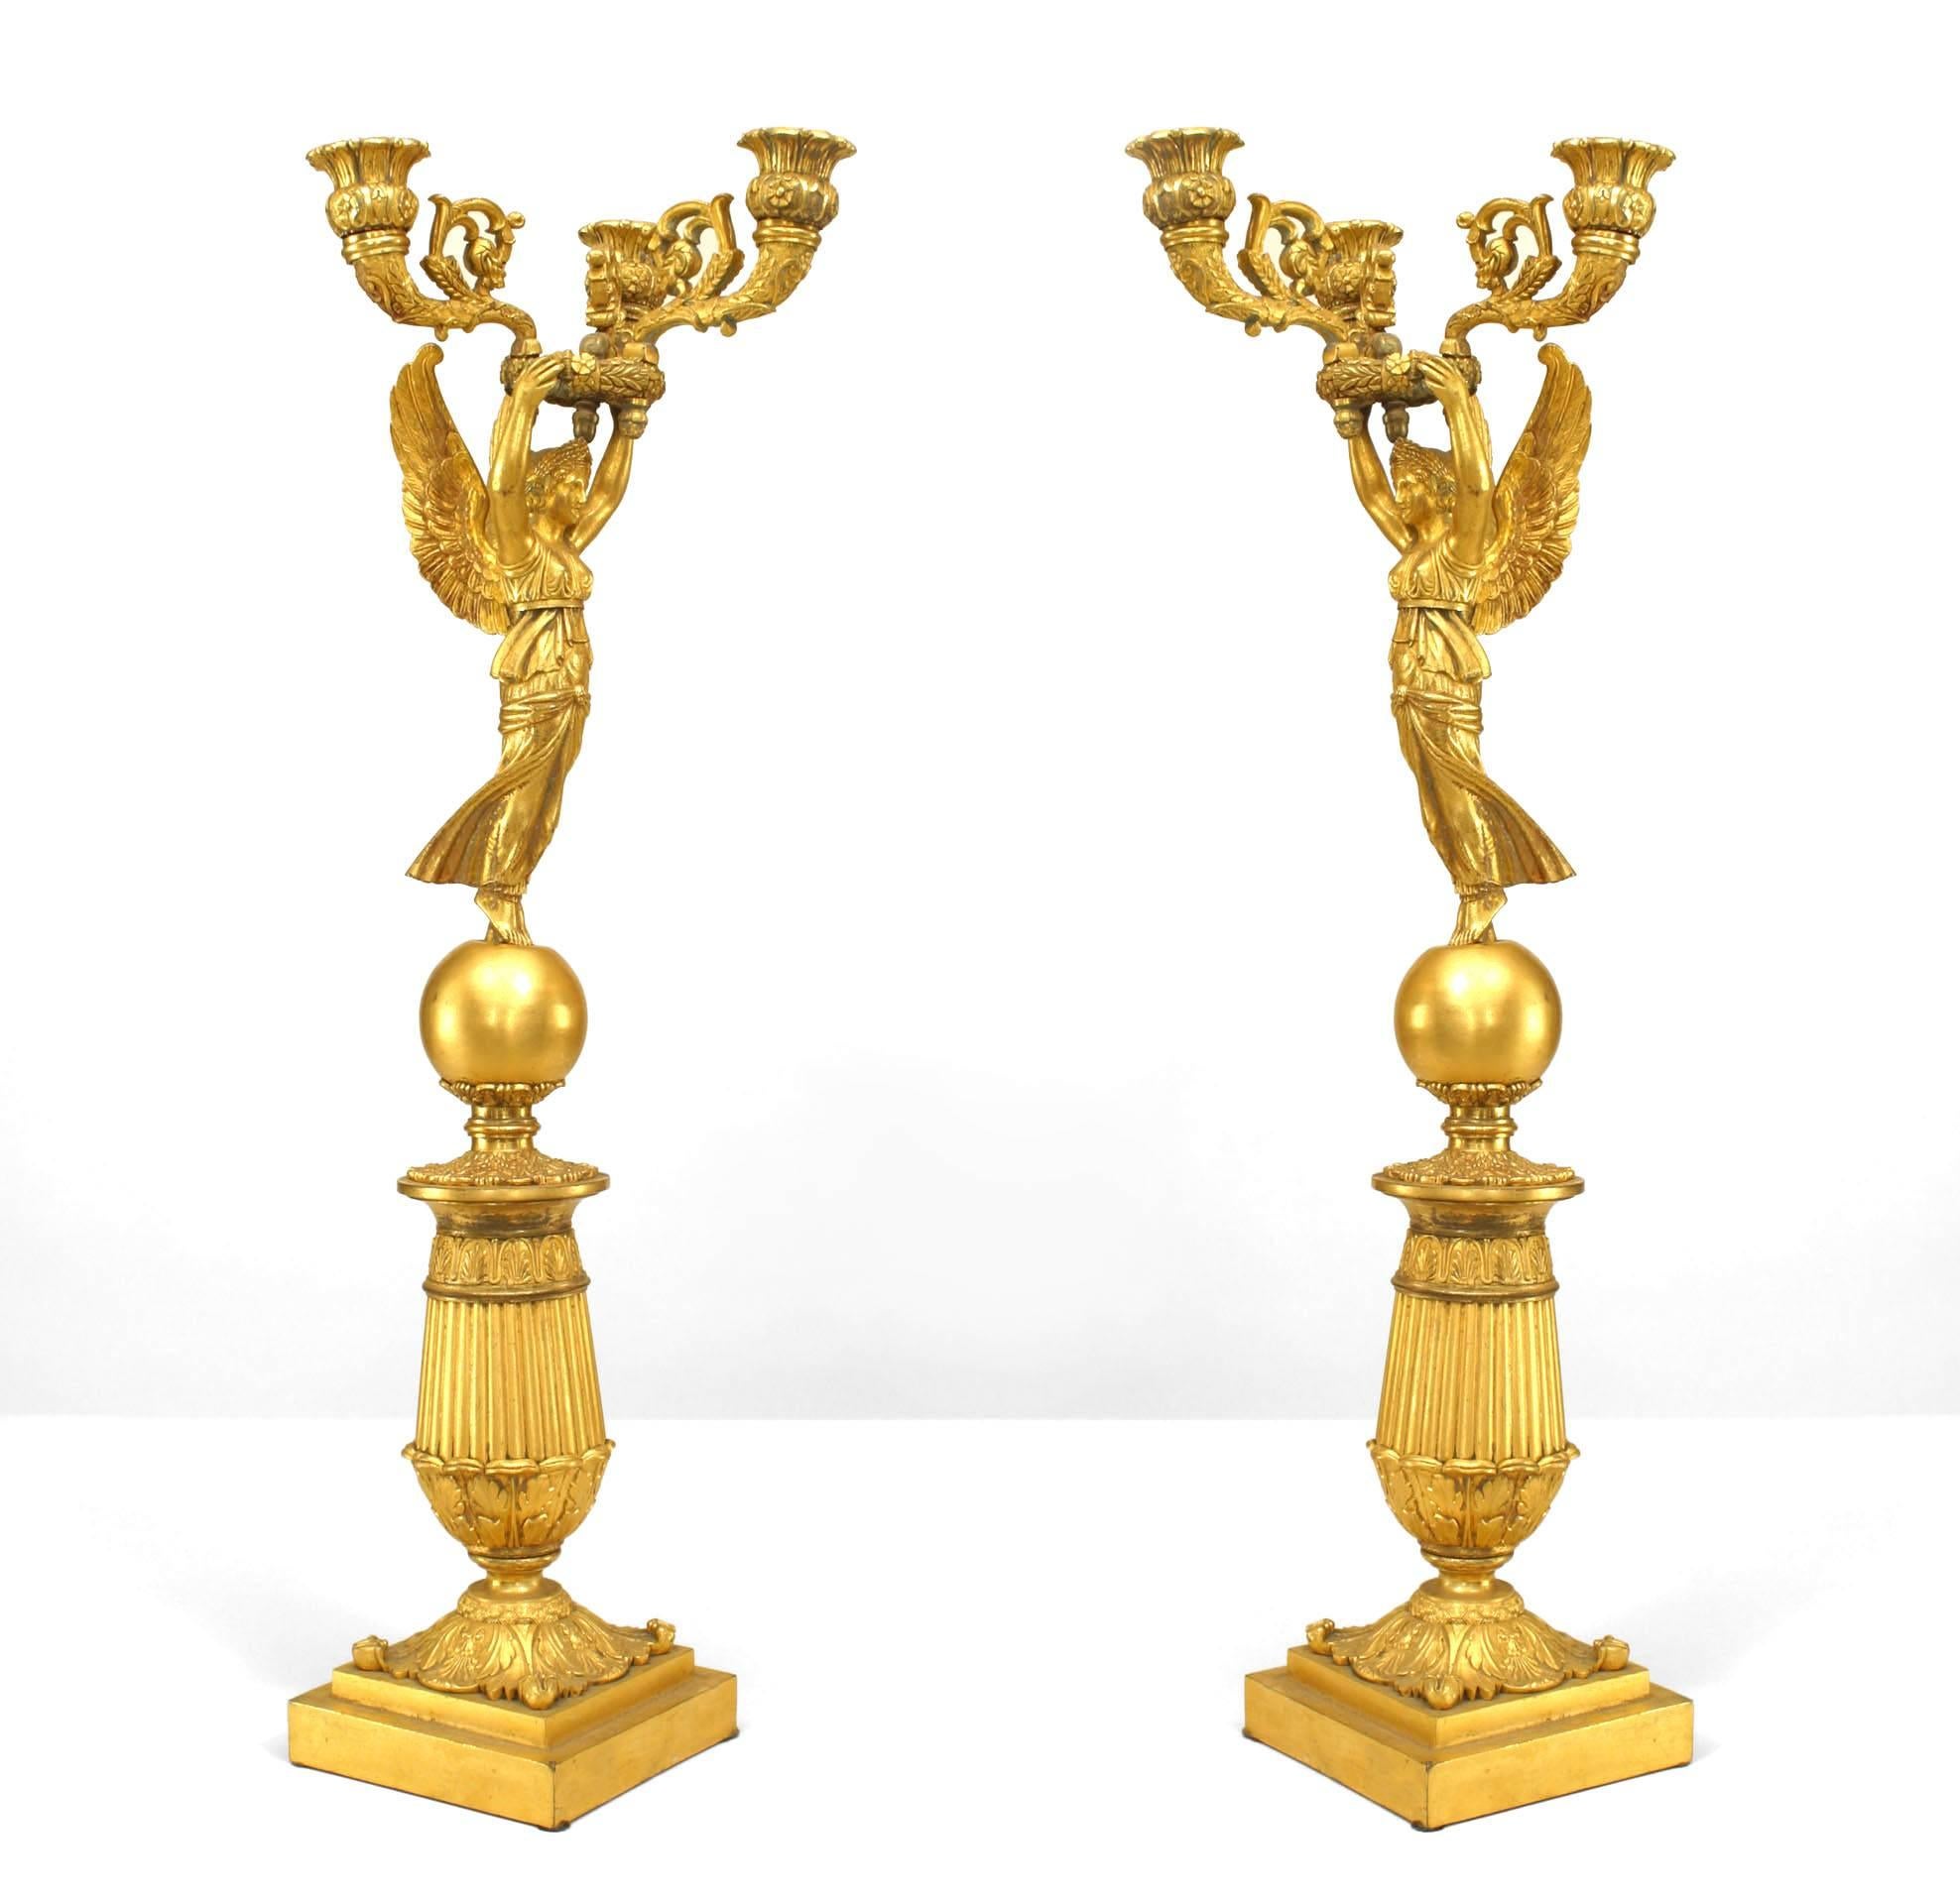 Zwei dreiarmige Bronzeleuchter im französischen Empire-Stil des 19. Jahrhunderts, die jeweils eine klassische geflügelte Sieges- oder Nike-Figur auf einem abgestuften, architektonischen Sockel darstellen.